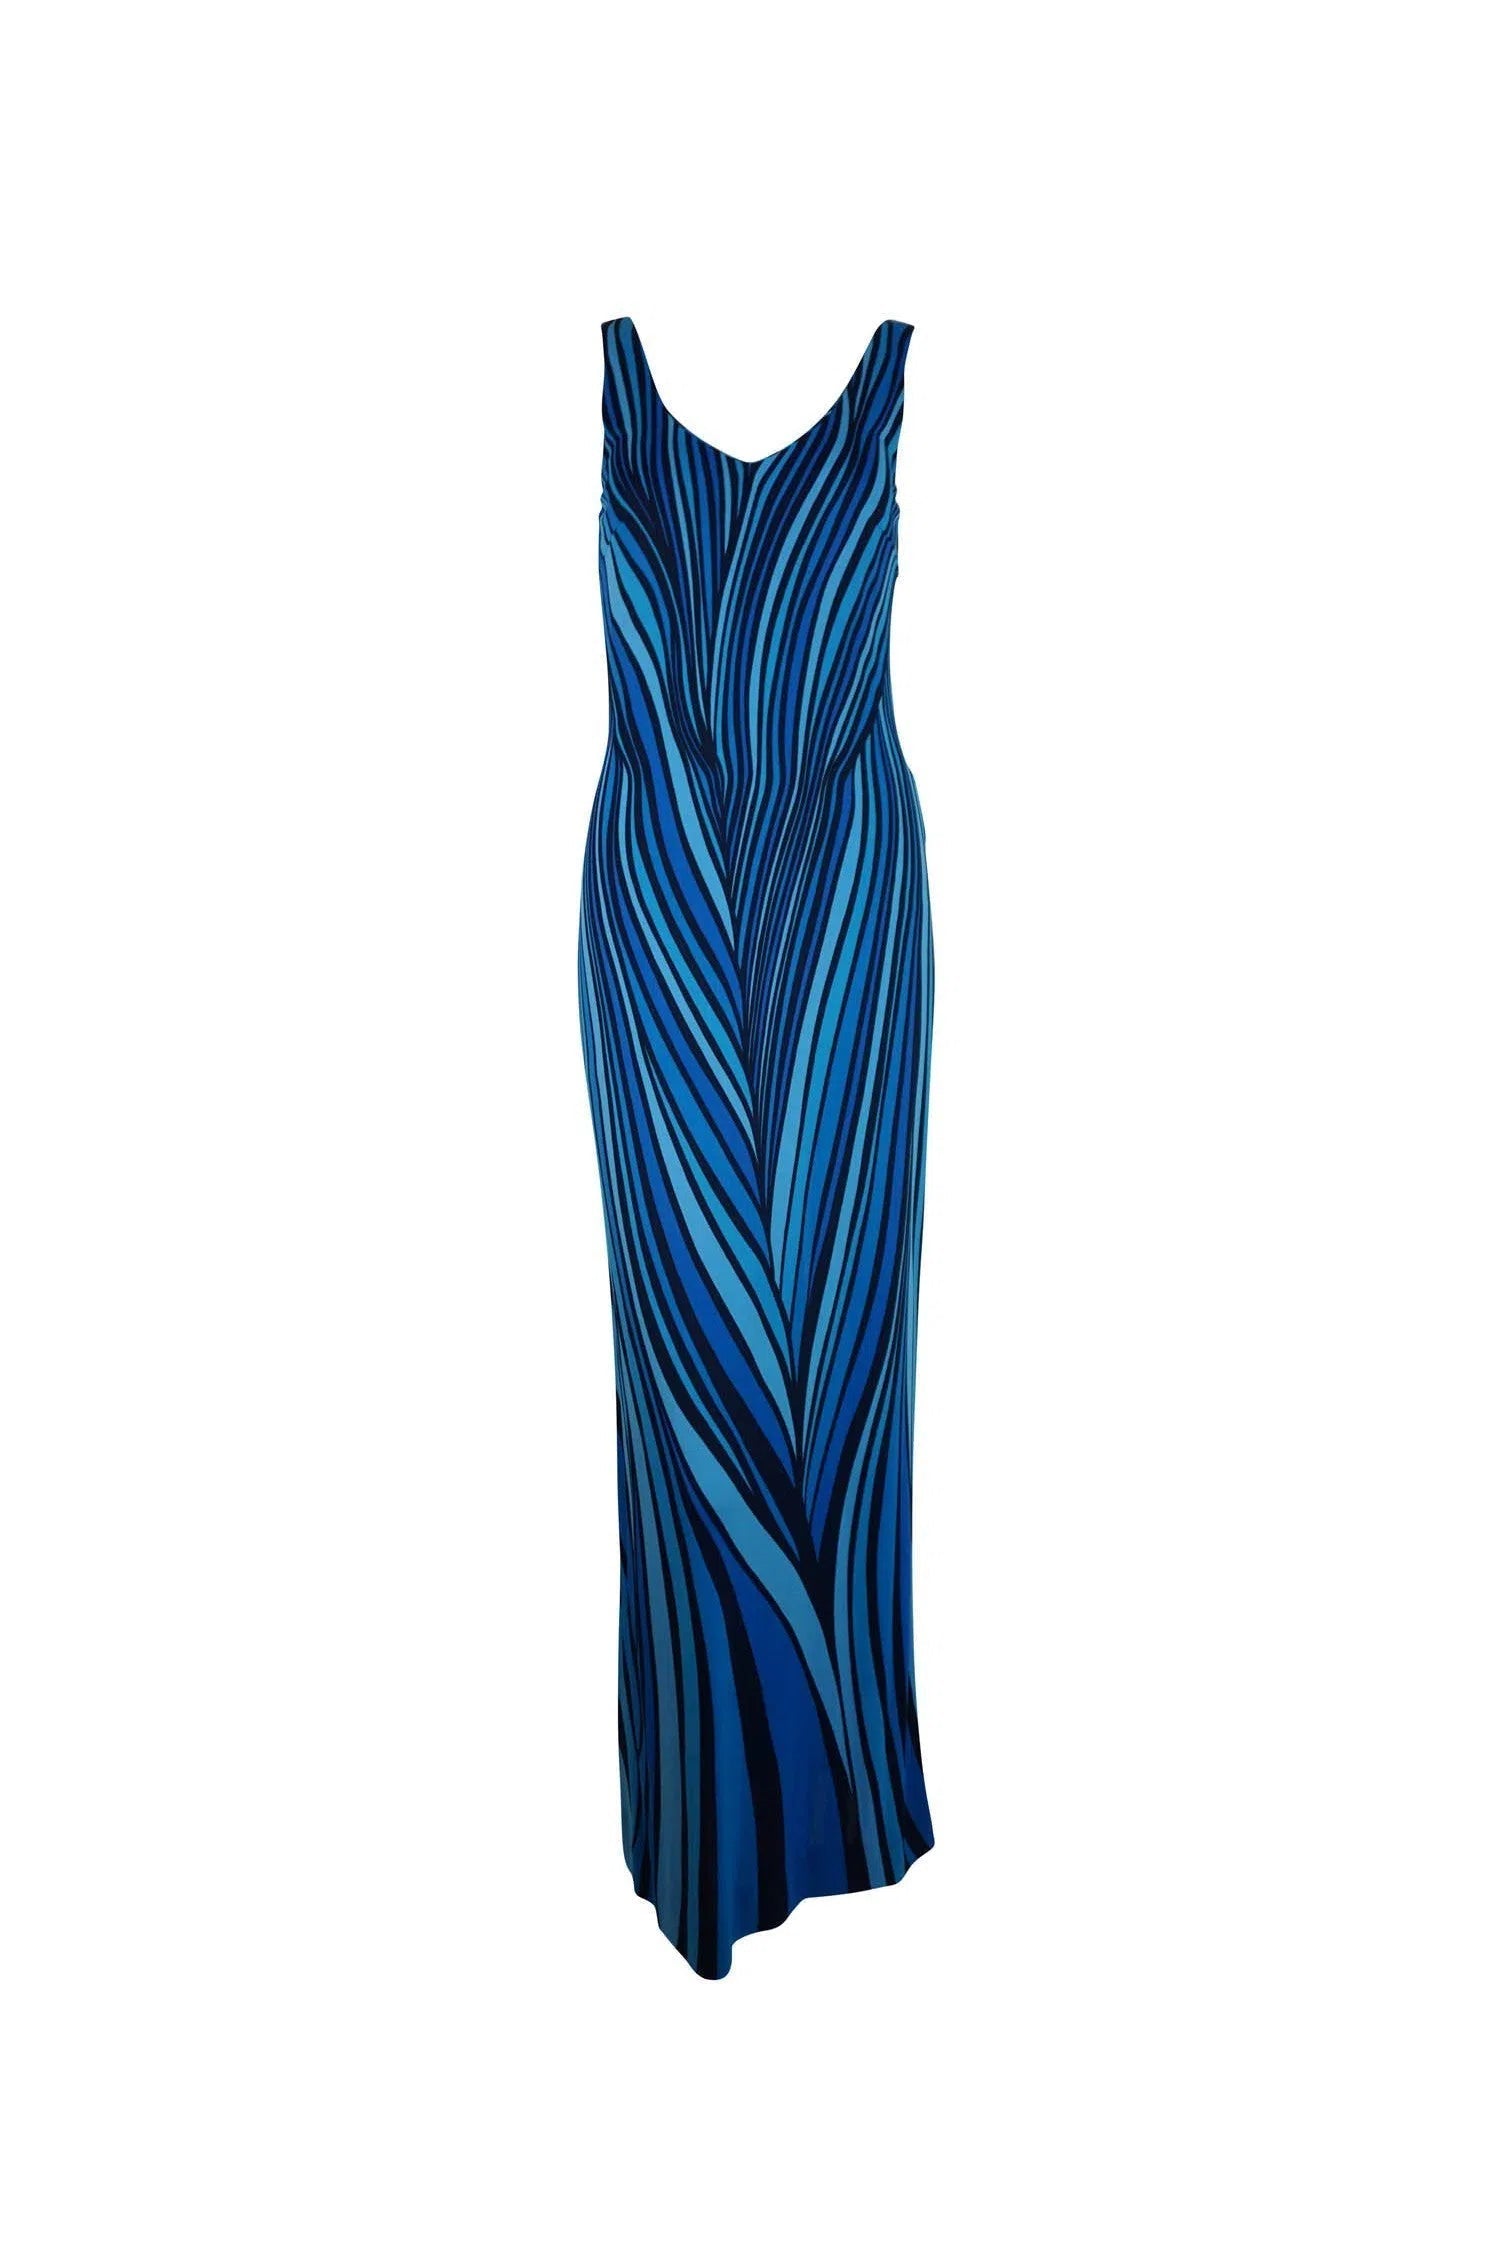 Roberta di Camerino 1970s Blue Swirl Dress - Foxy Couture Carmel